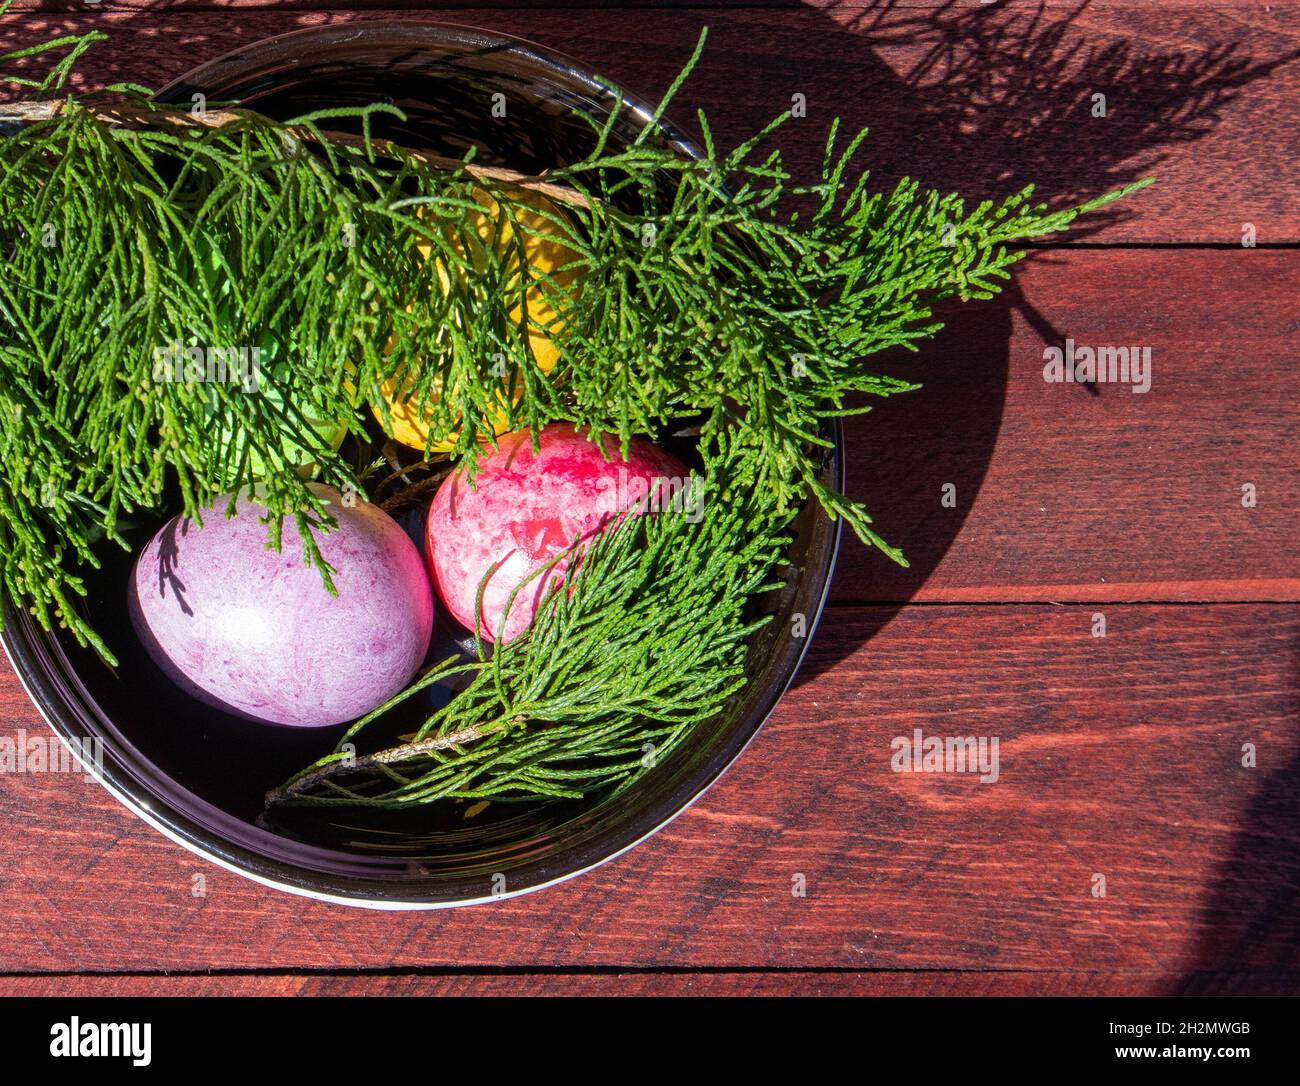 Cuatro huevos de pascua multicolor en un plato de cerámica superficie de madera roja Foto de stock